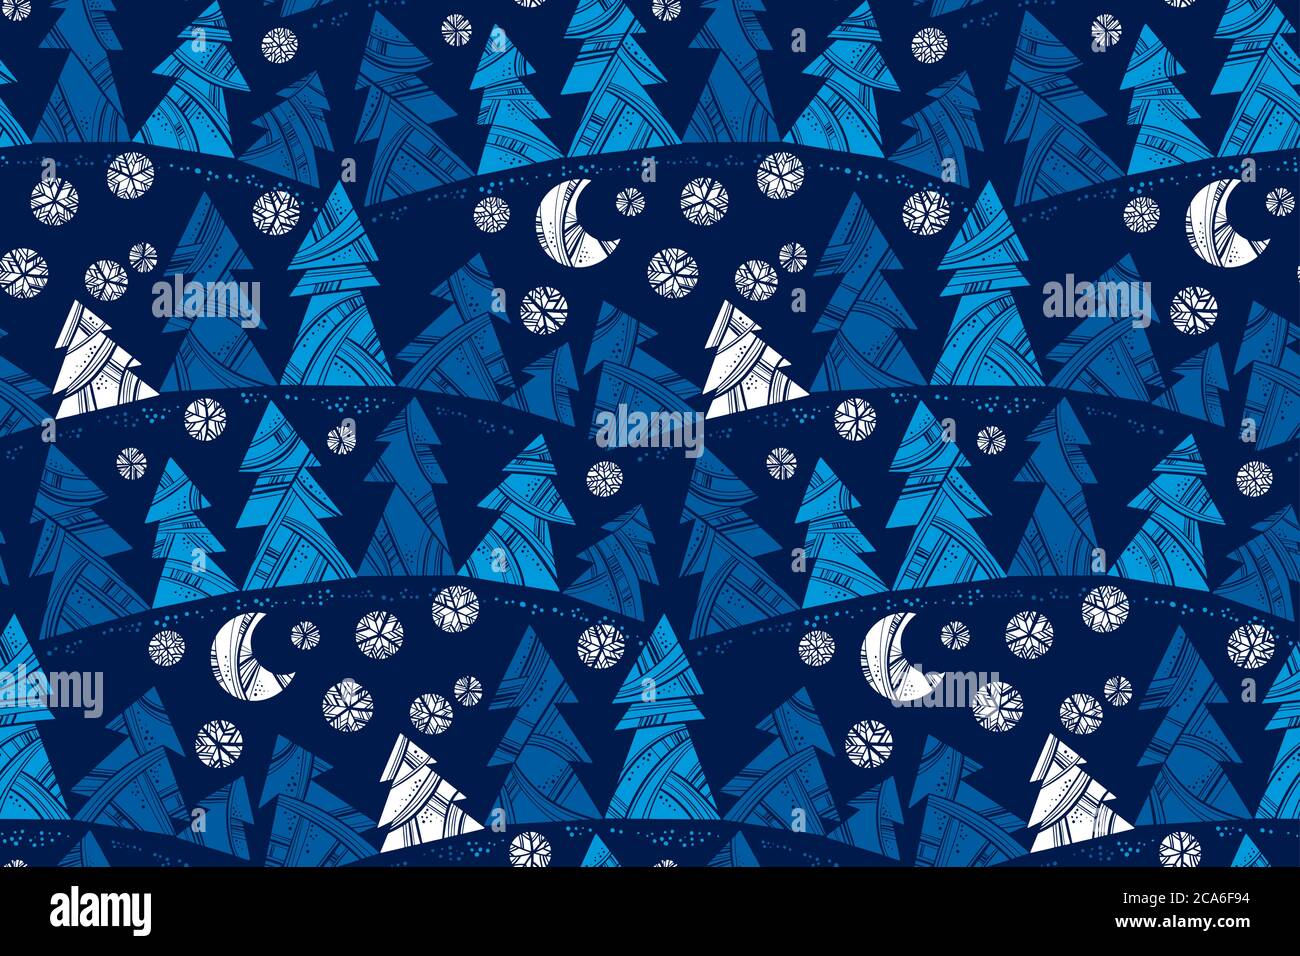 Albero decorativo blu profondo motivo senza giunture per sfondo, tessuto, tessuto, wrap, superficie, web e stampa. Foresta invernale dalla silhouette semplice Illustrazione Vettoriale